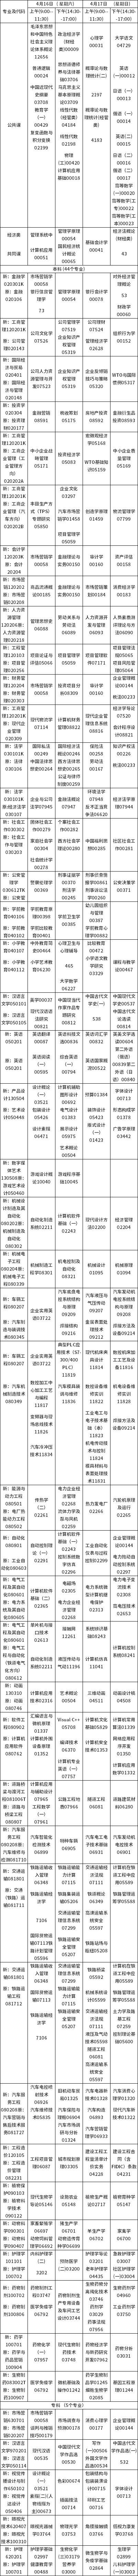 吉林省202年4月自学考试开考专业课程安排表